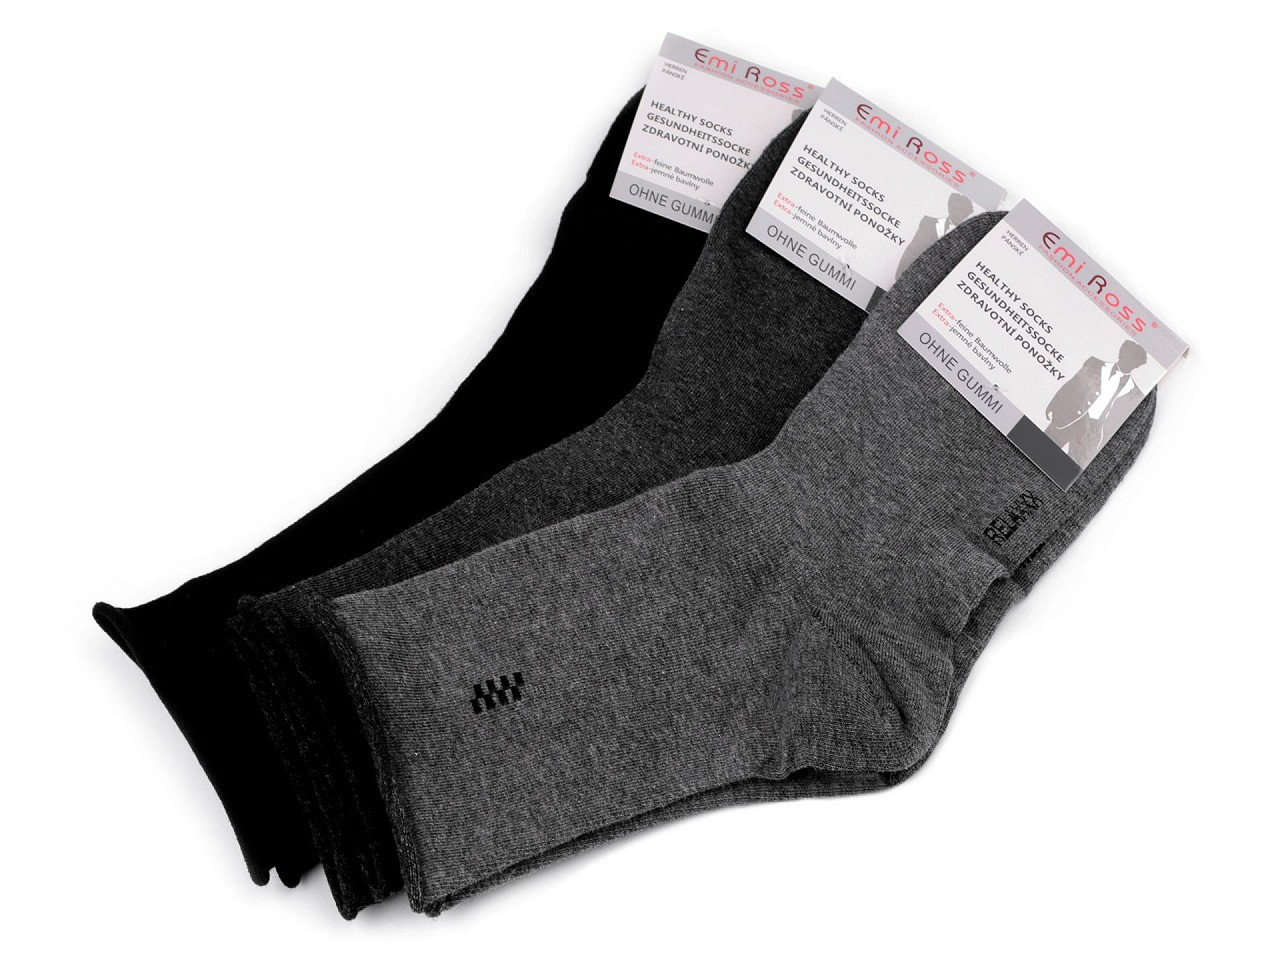 Pánské bavlněné ponožky se zdravotním lemem Emi Ross, barva 3 (vel. 39-42) mix